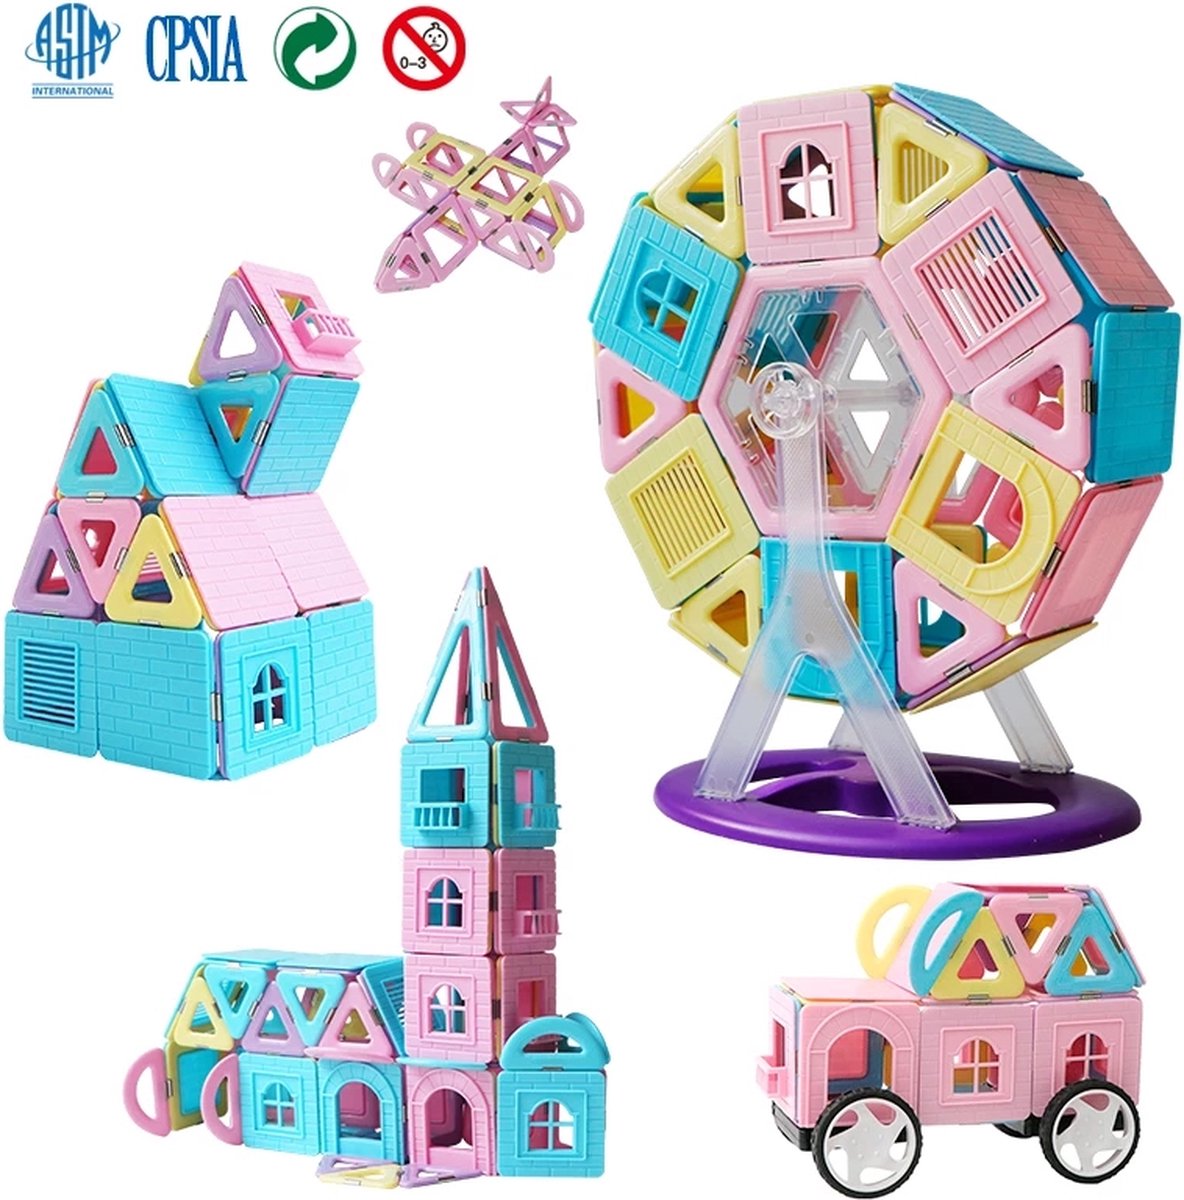 Polaza®️ Bouwblokken Set - 84 Stuks - Bouwstenen - Speelblokken - Blokken - Speelgoed - voor Kinderen - ABS - met Opbergdoos - ABS